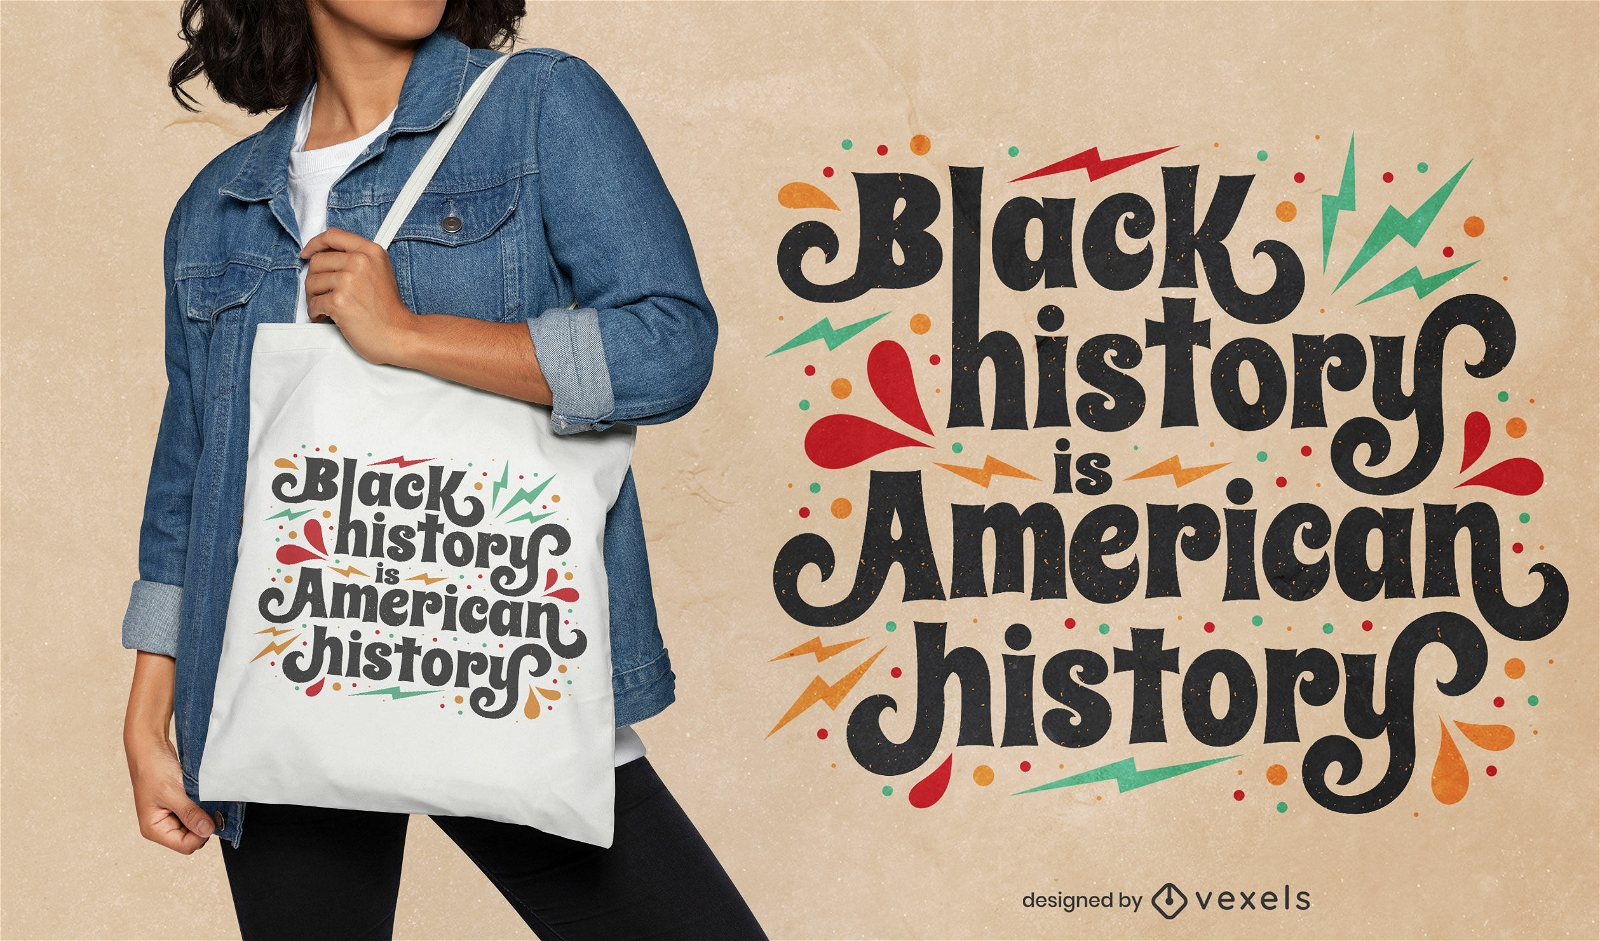 Black history quote tote bag design